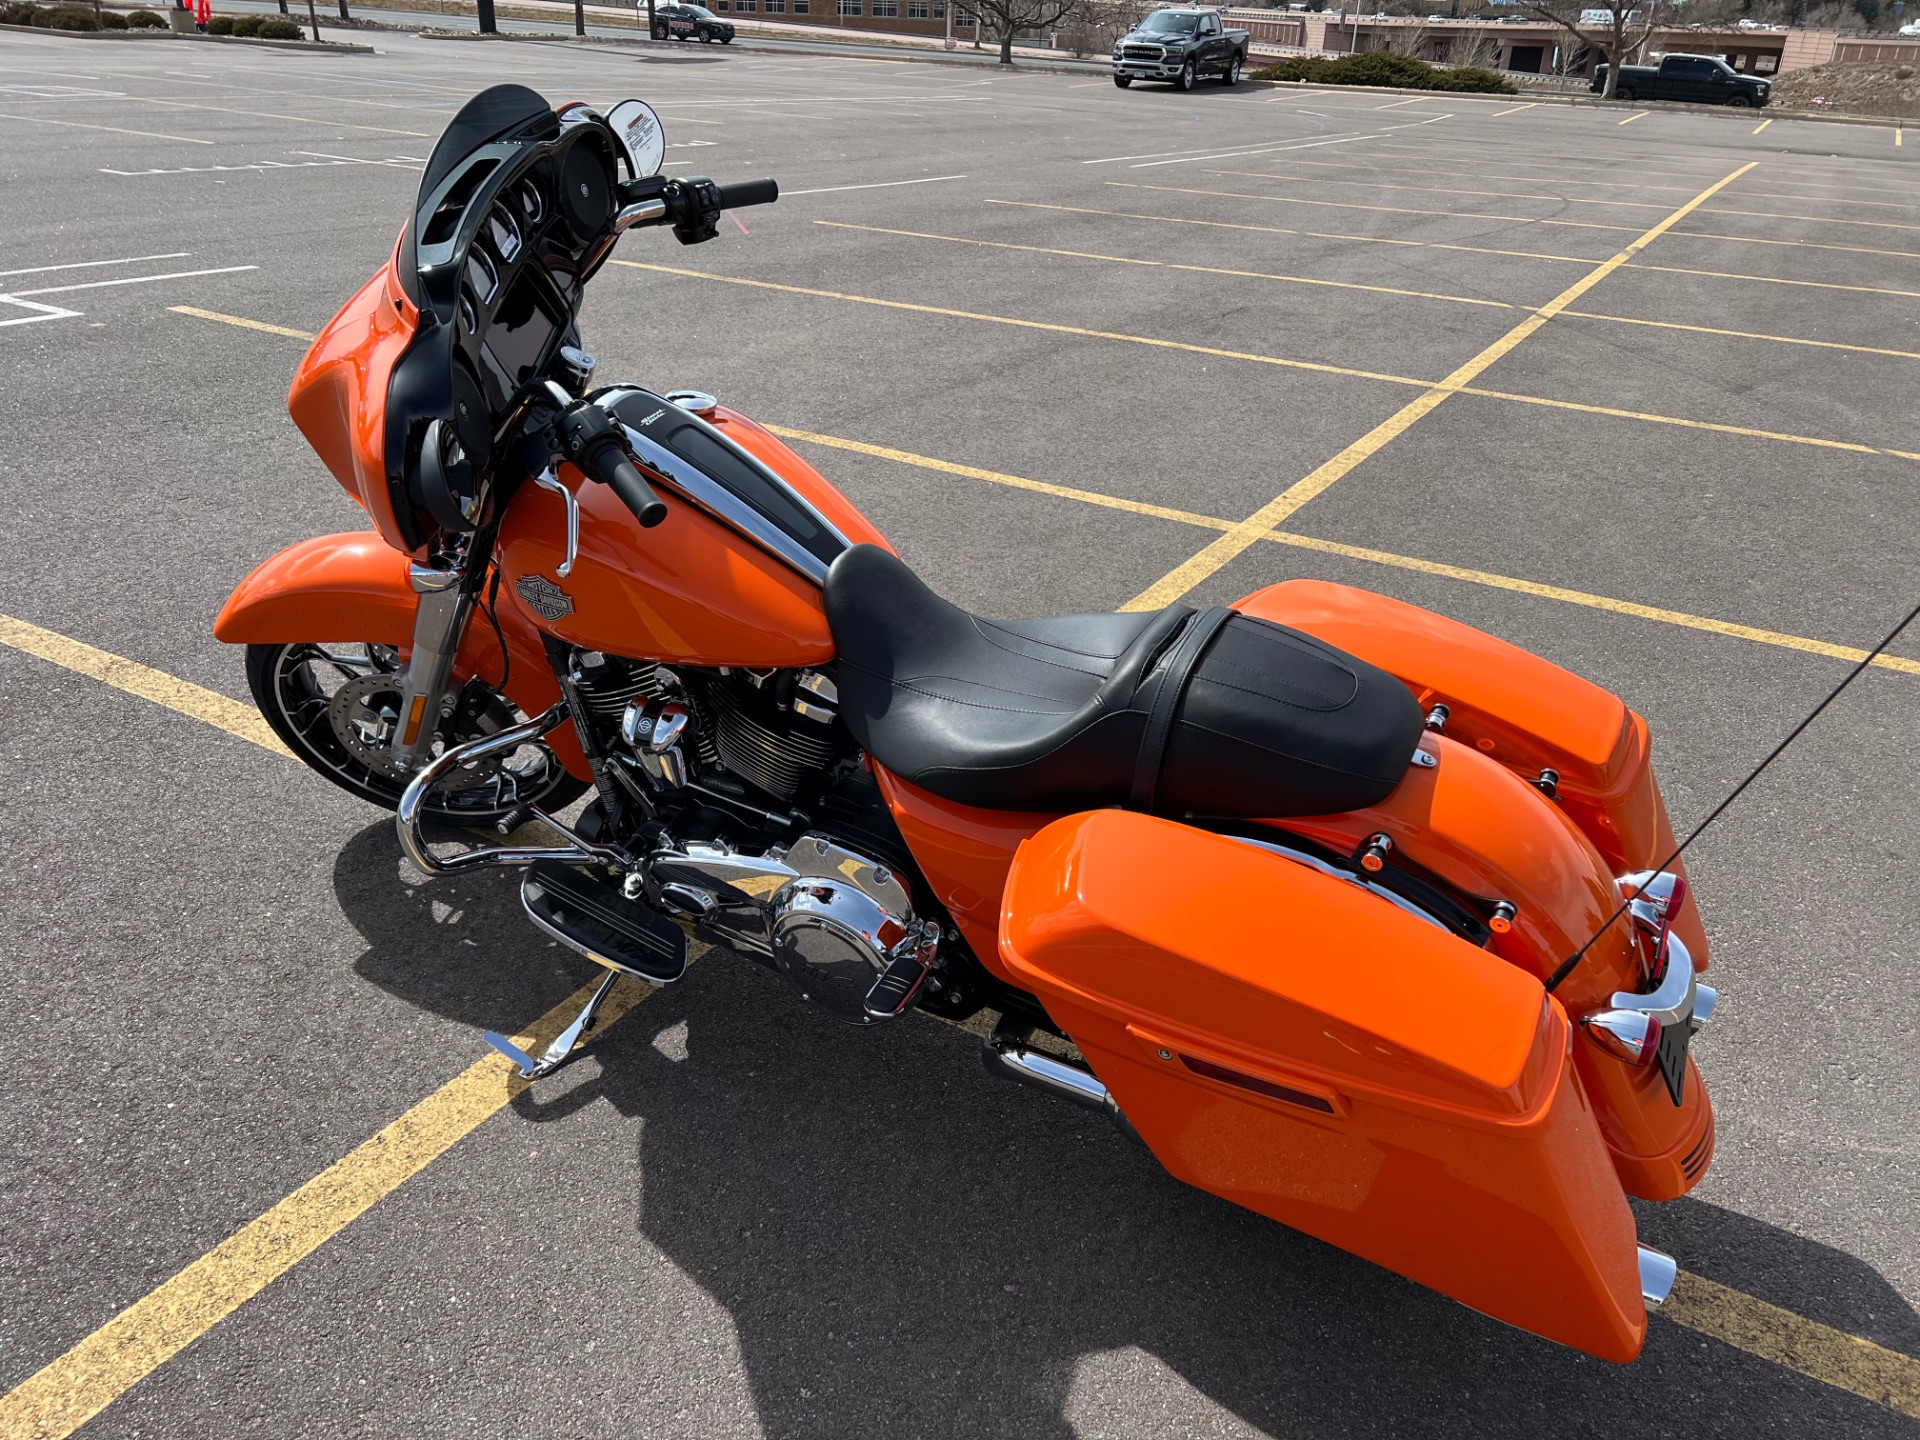 2023 Harley-Davidson Street Glide® Special in Colorado Springs, Colorado - Photo 6